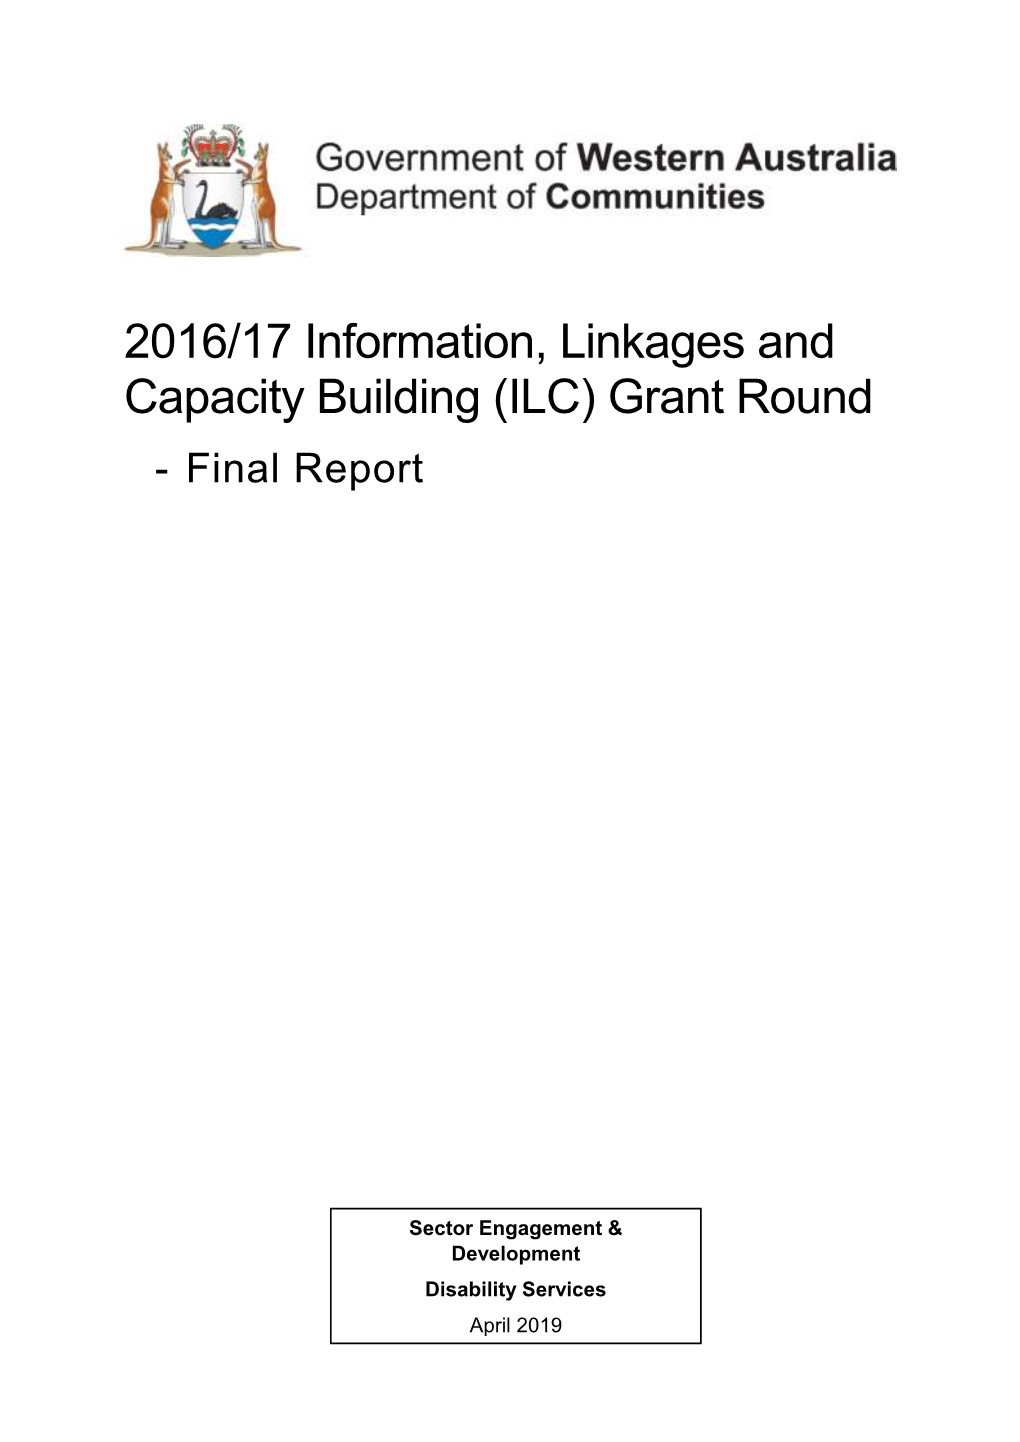 ILC) Grant Round - Final Report